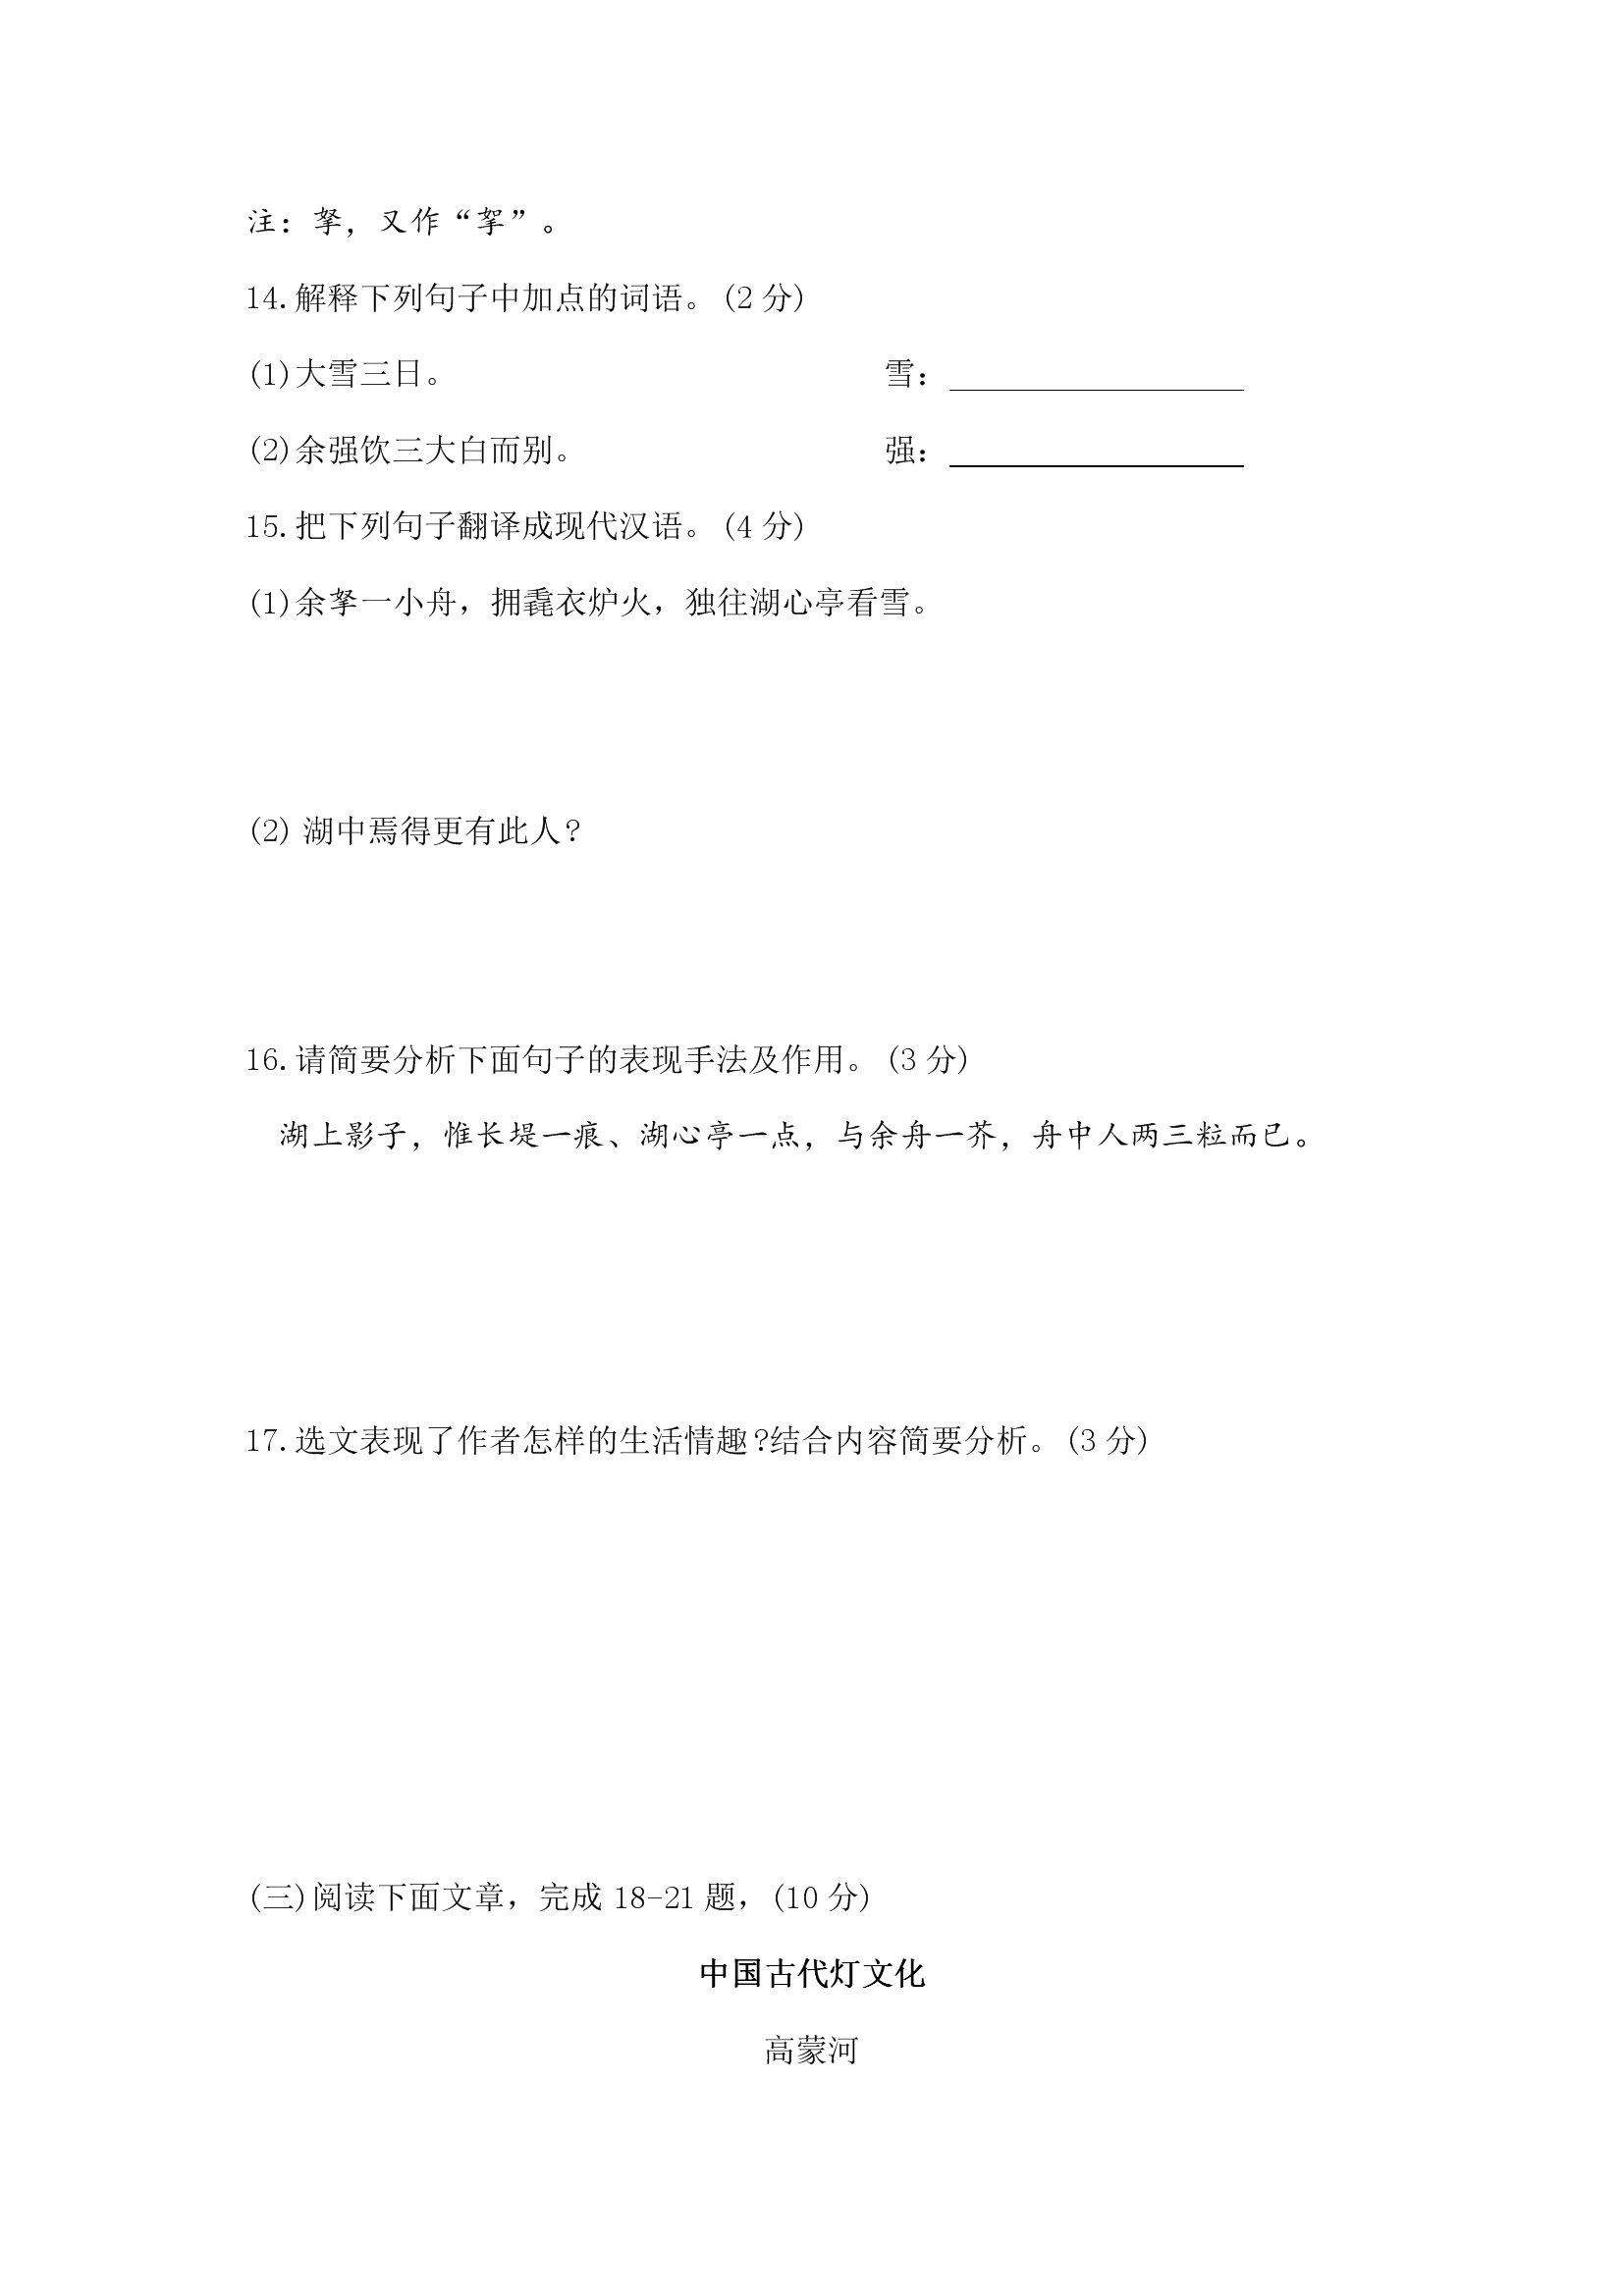 2019年云南中考《语文》真题及答案已公布